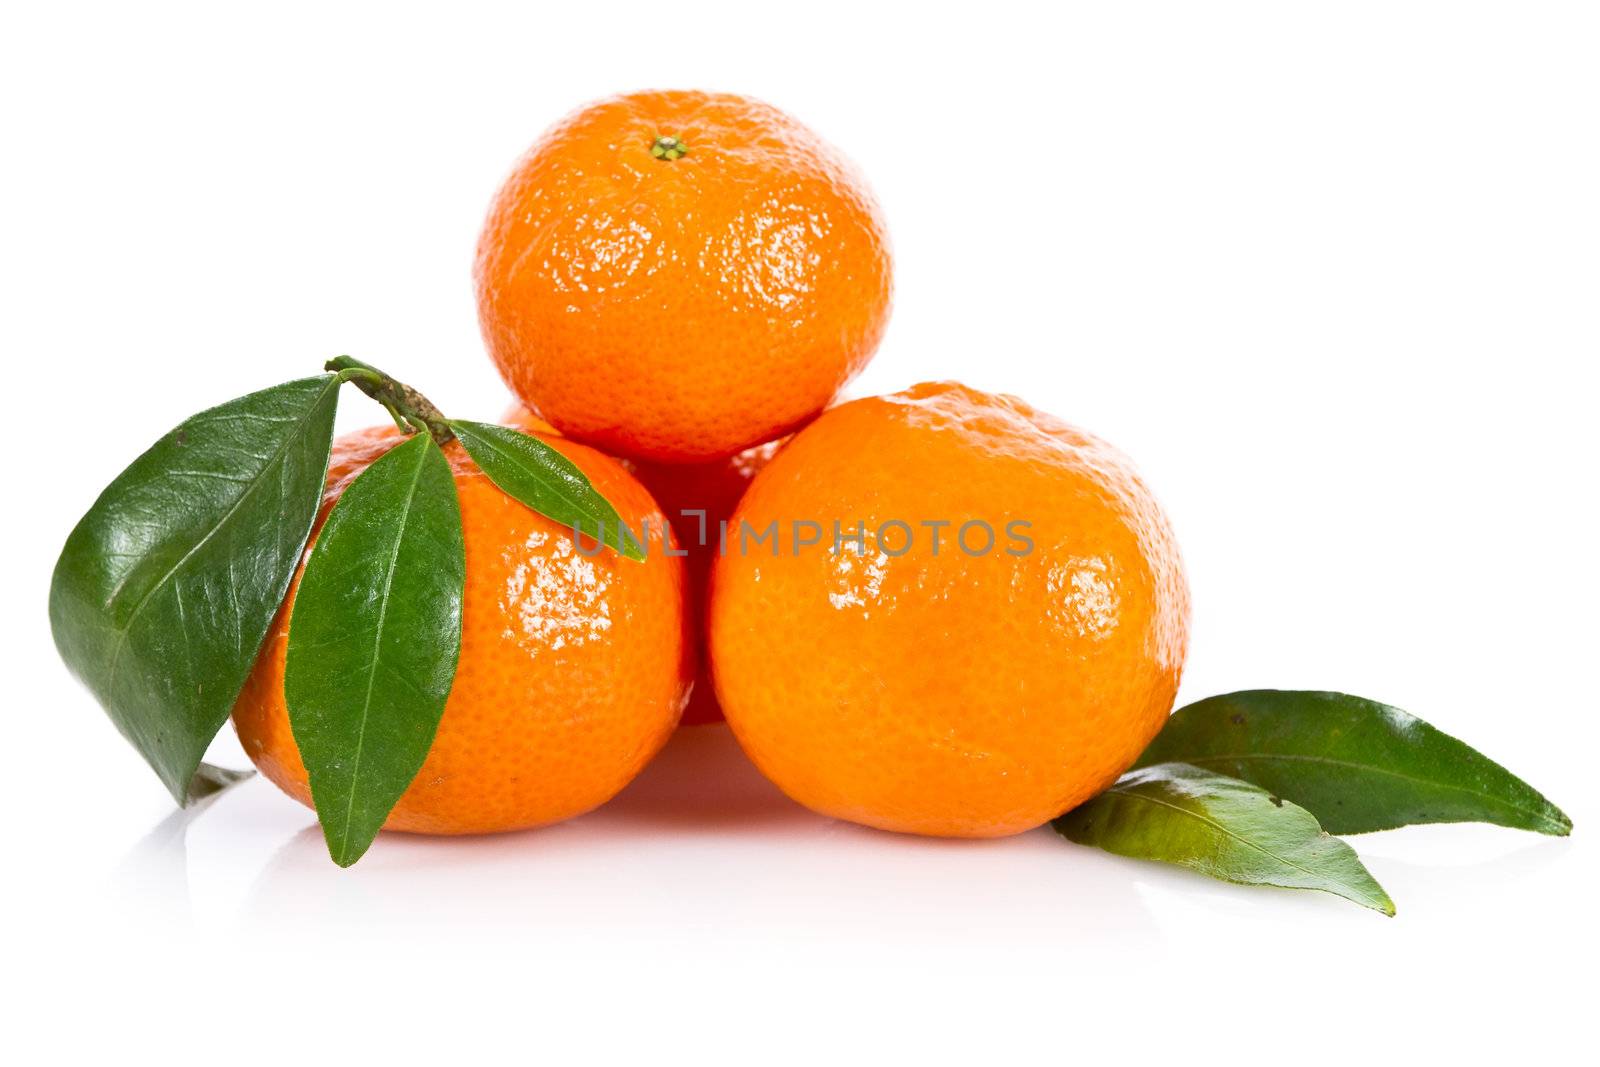 Mandarine fruits by caldix